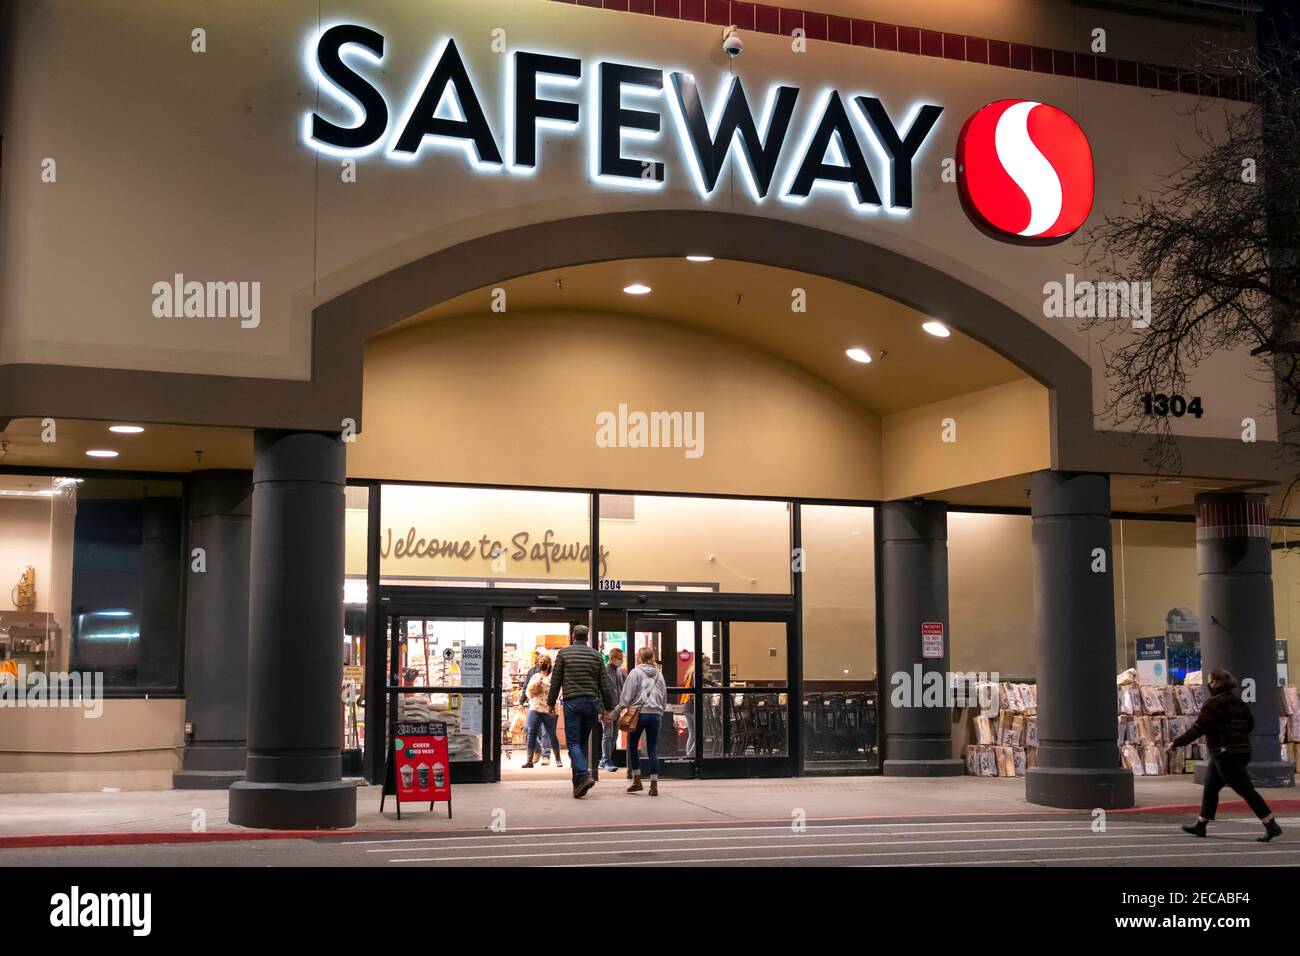 Die Käufer betreten nachts einen beleuchteten Safeway Supermarket-Supermarkt, der aufgrund des Maskenmandats Washingtons Masken trägt. Stockfoto